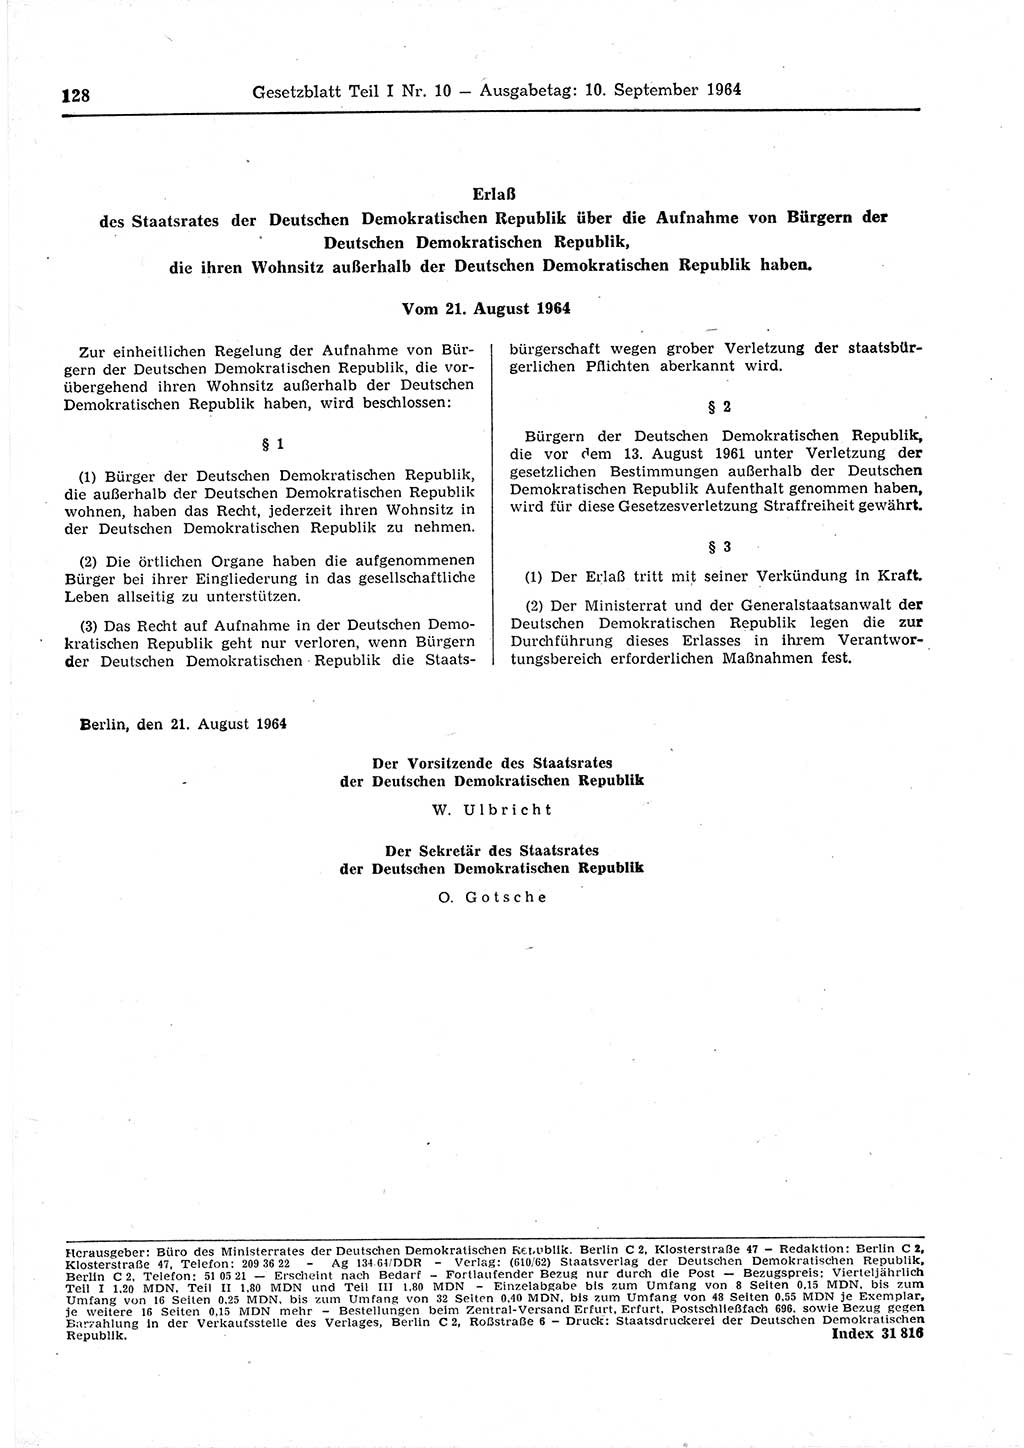 Gesetzblatt (GBl.) der Deutschen Demokratischen Republik (DDR) Teil Ⅰ 1964, Seite 128 (GBl. DDR Ⅰ 1964, S. 128)